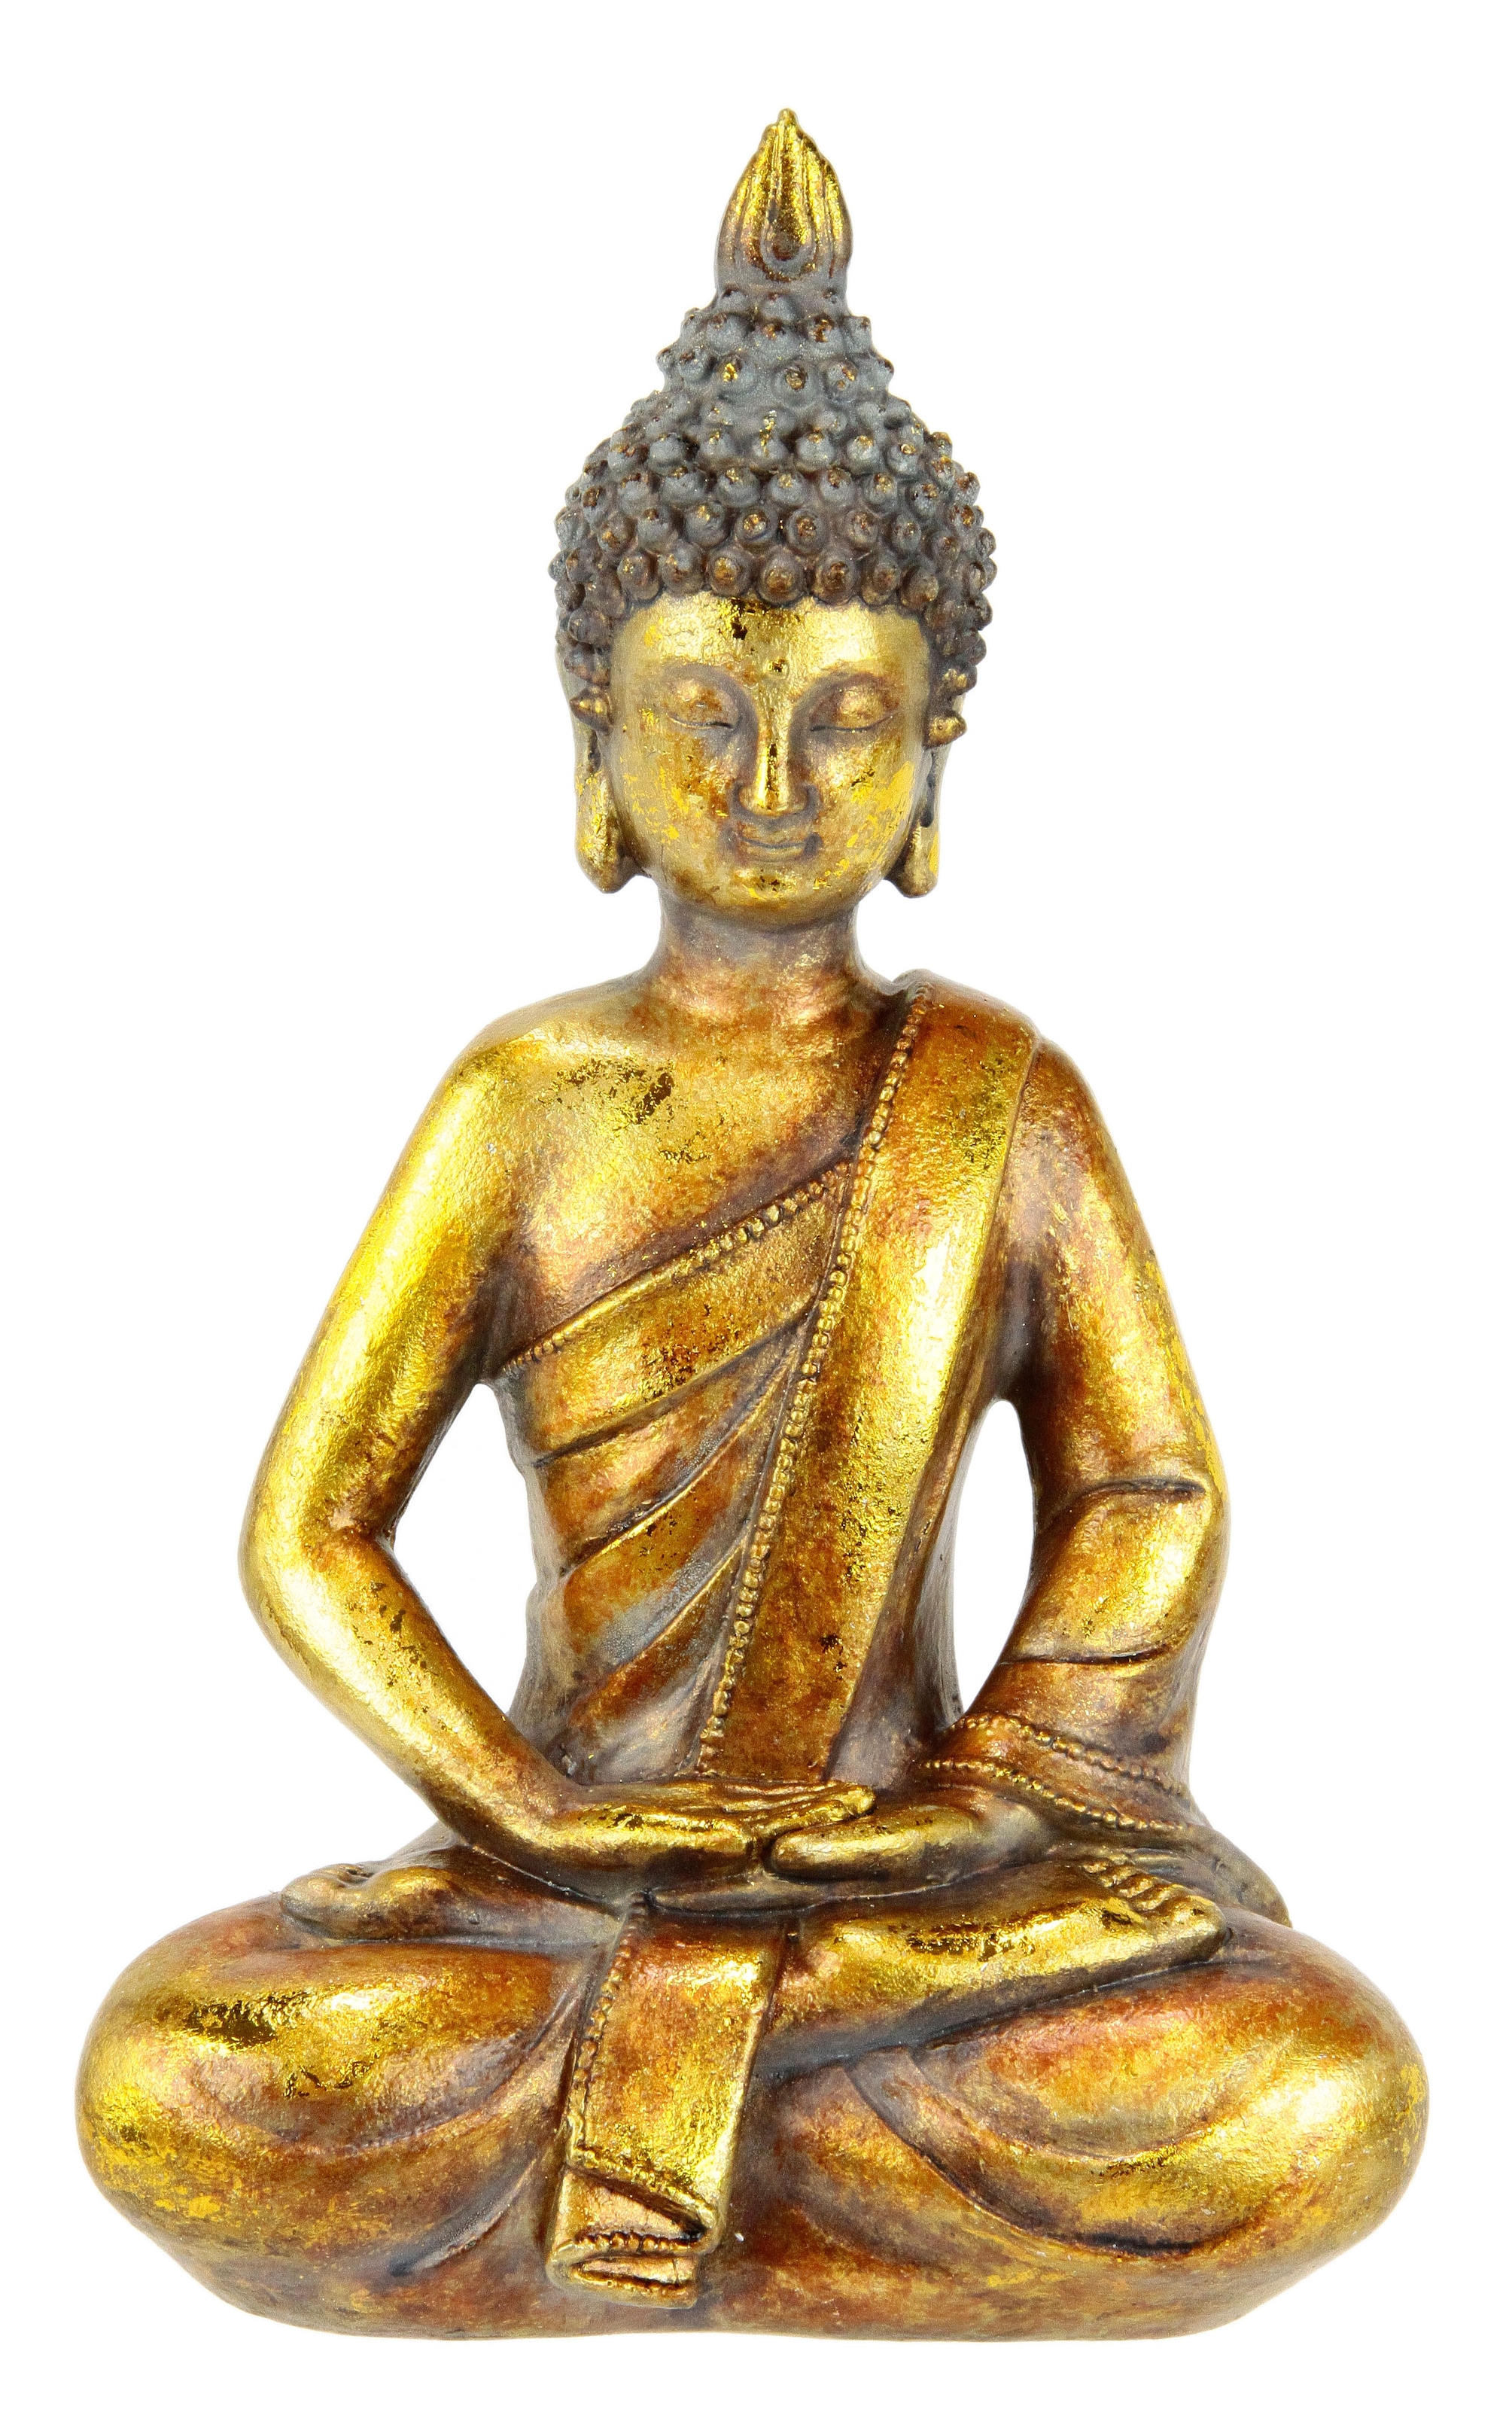 Dekofigur »Buddha«